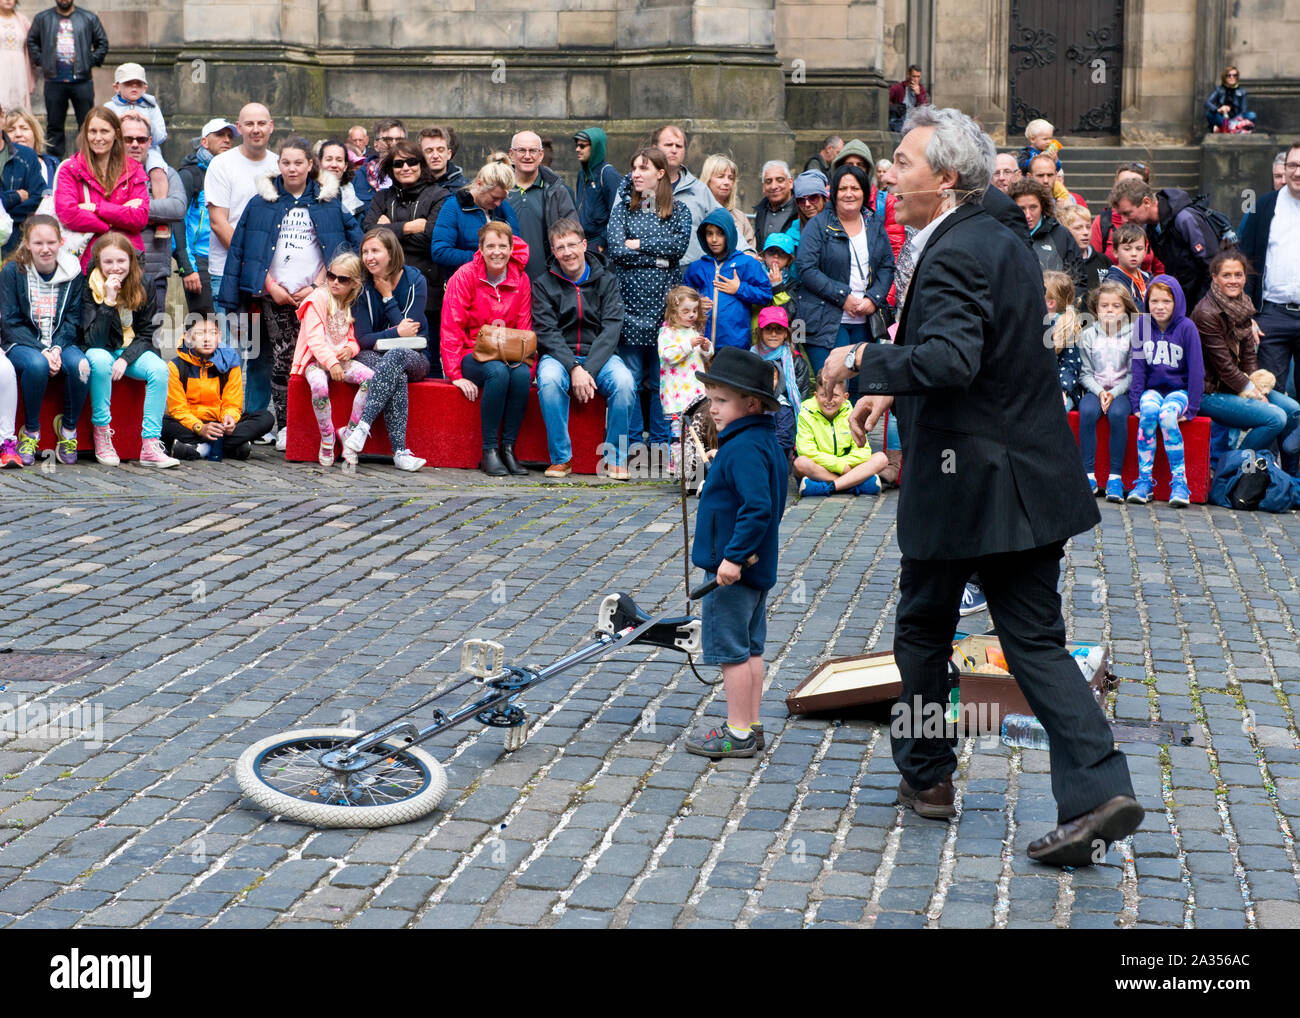 Jeune garçon de profiter de l'auditoire participant à la loi de la rue. Edinburgh Fringe Festival Banque D'Images